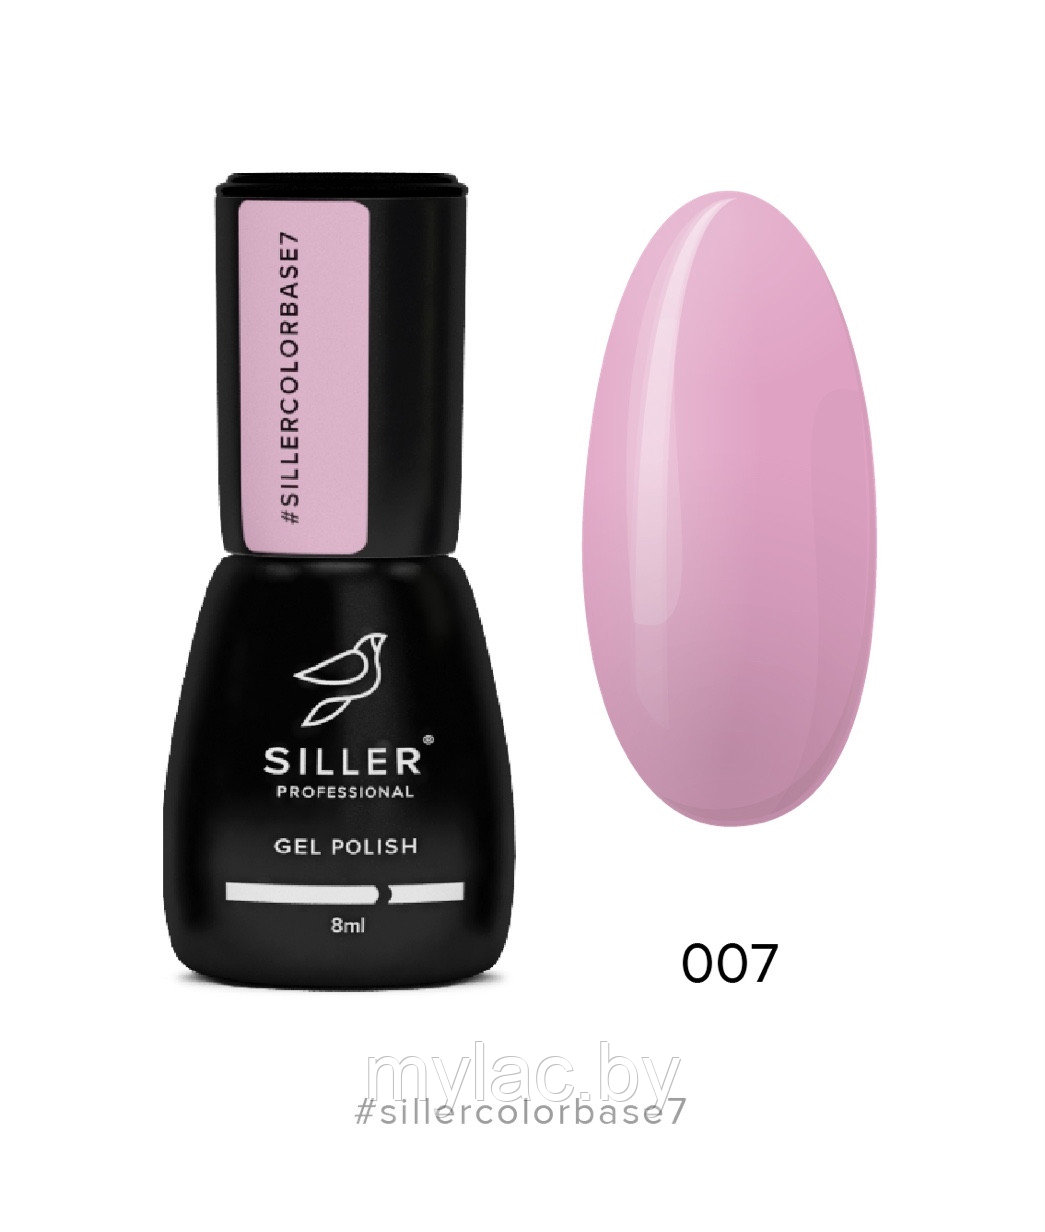 Siller Color Base №7 — камуфлирующая цветная база (пурпурно-розовая), 8мл